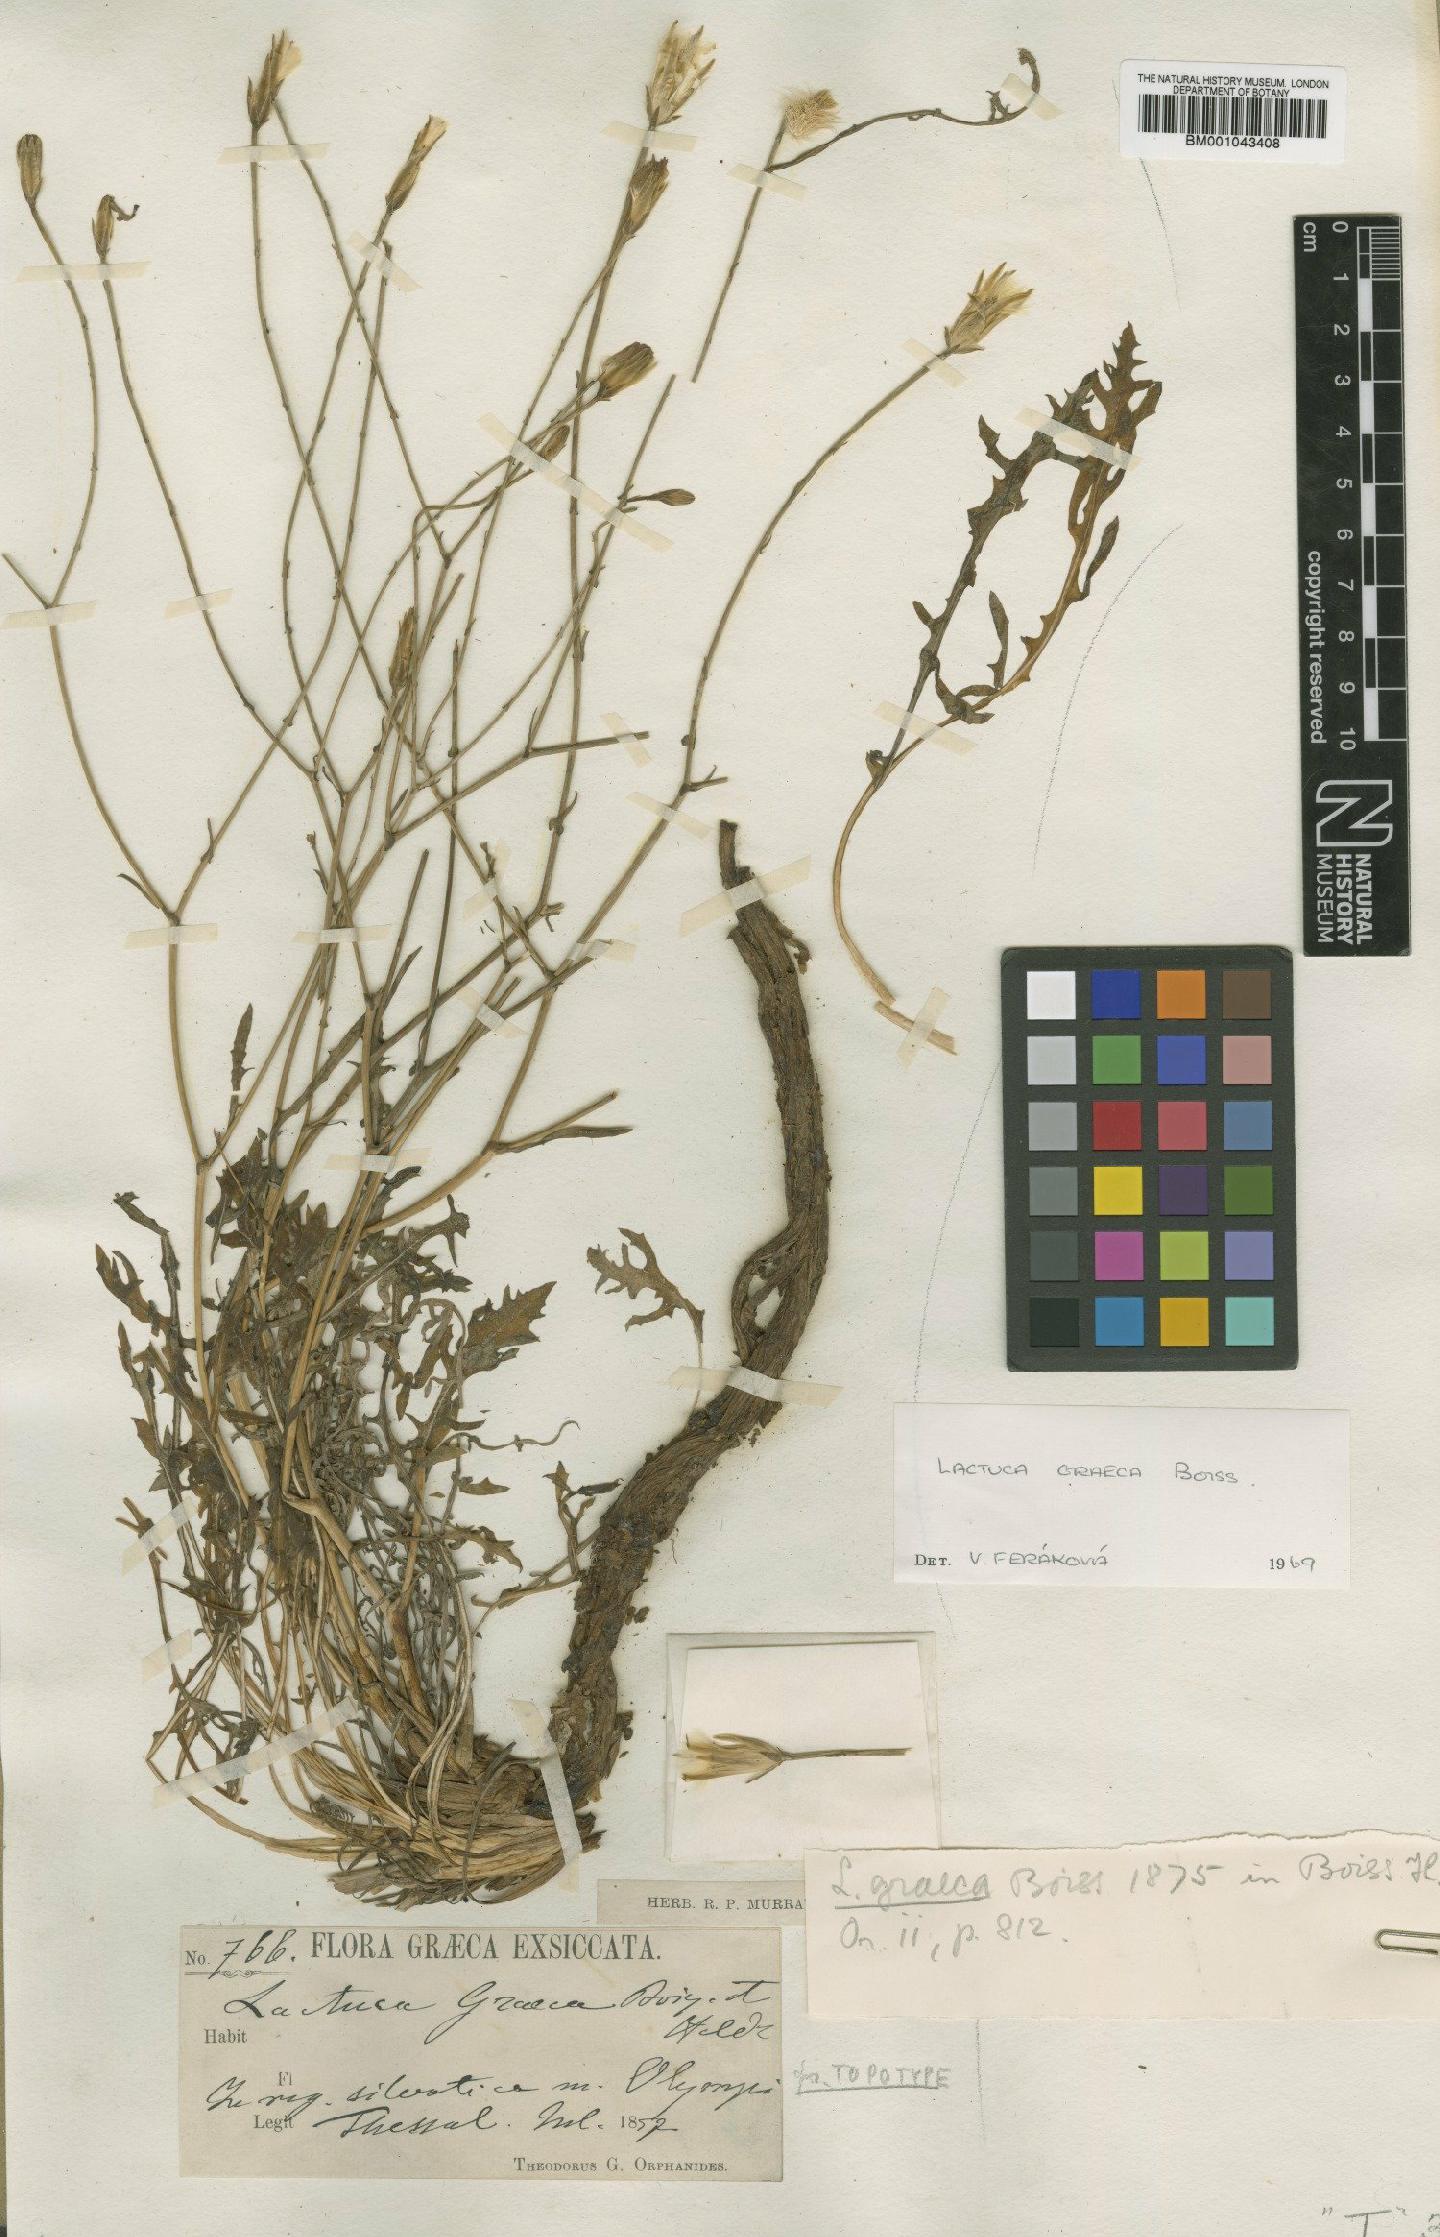 To NHMUK collection (Lactuca graeca Boiss.; Type; NHMUK:ecatalogue:1997951)